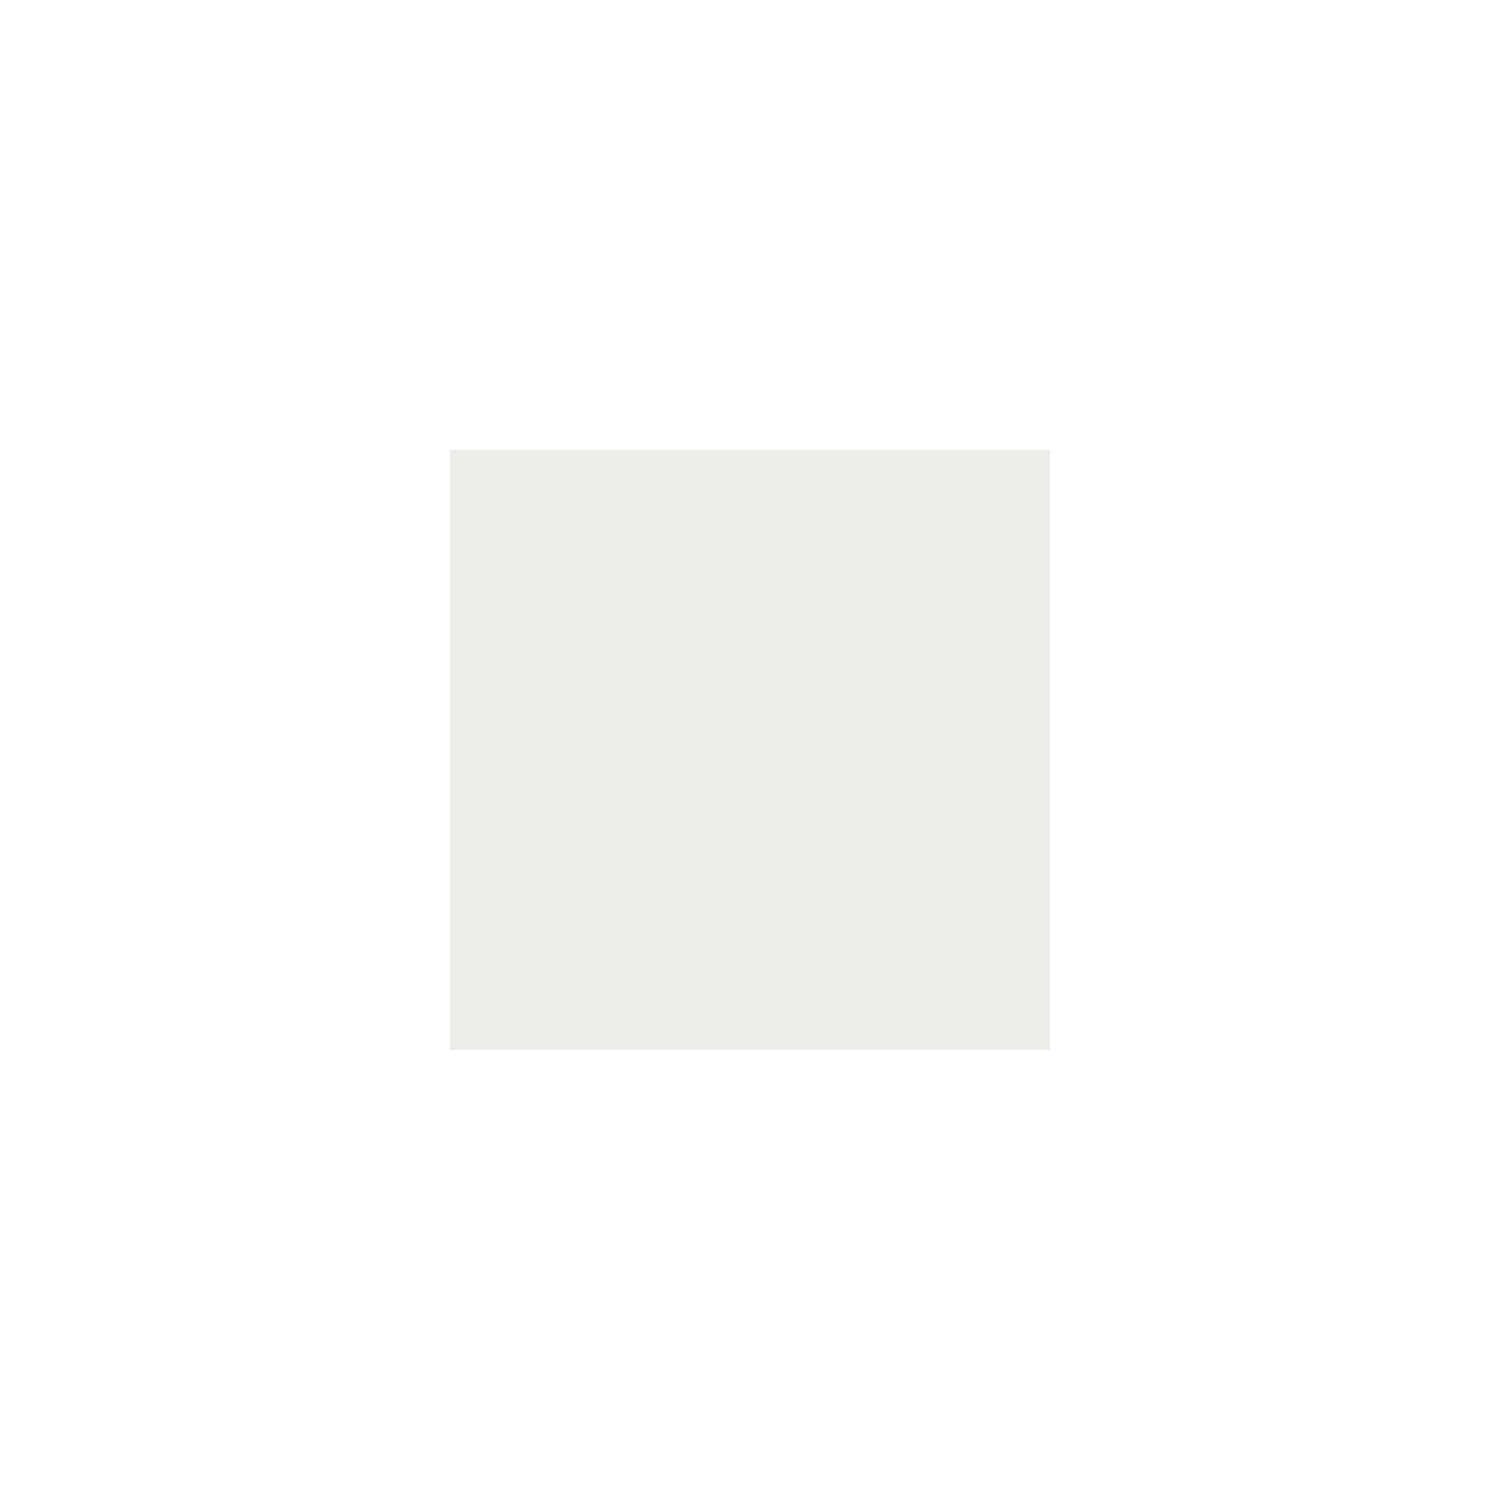 Itamoby Consolle allungabile 90x40/300 cm Diago Cemento telaio Bianco